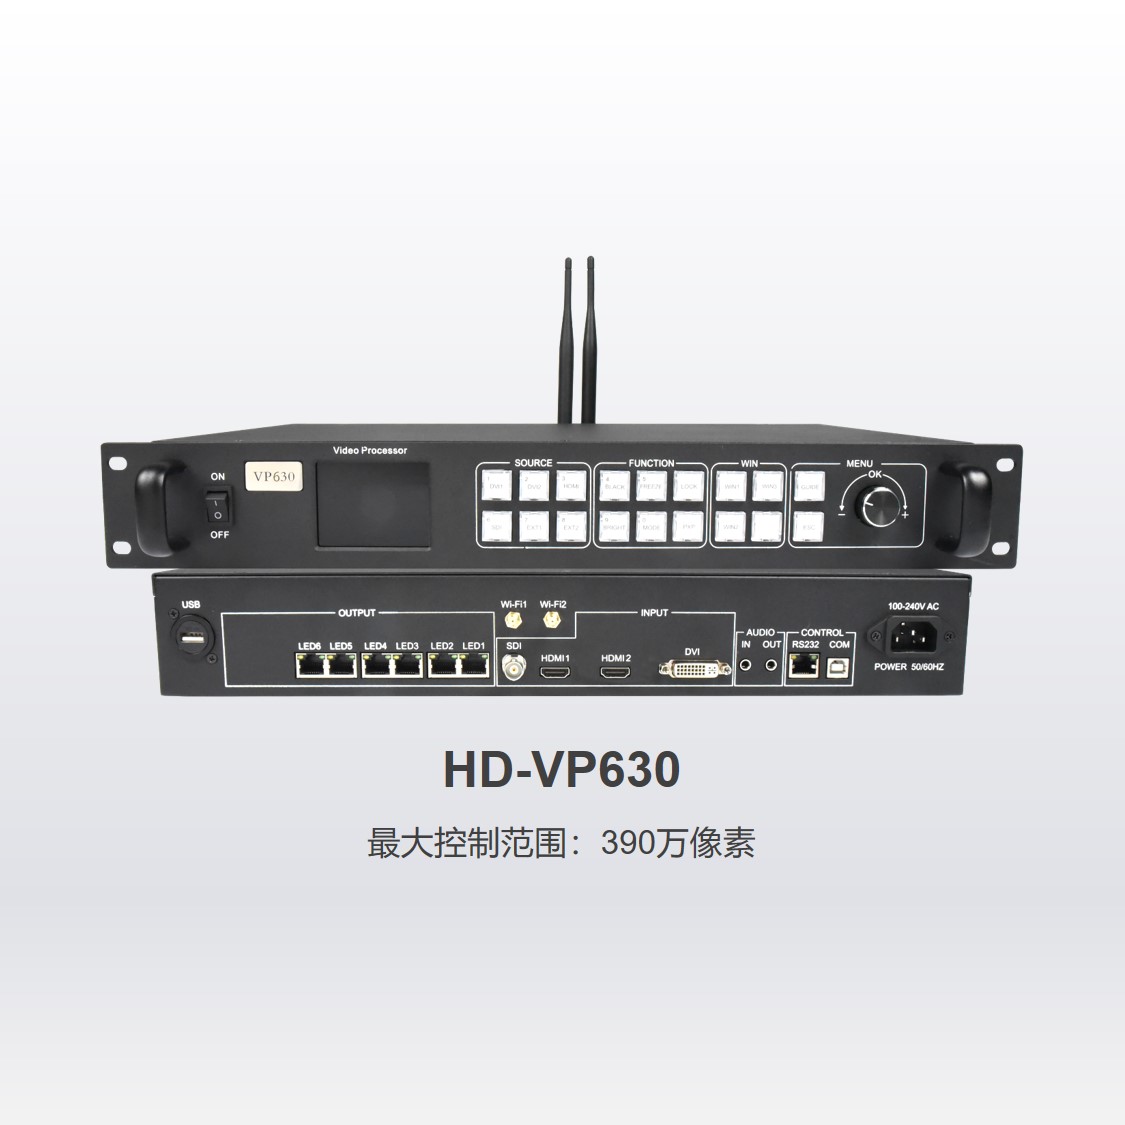 三画面视频处理器HD-VP630